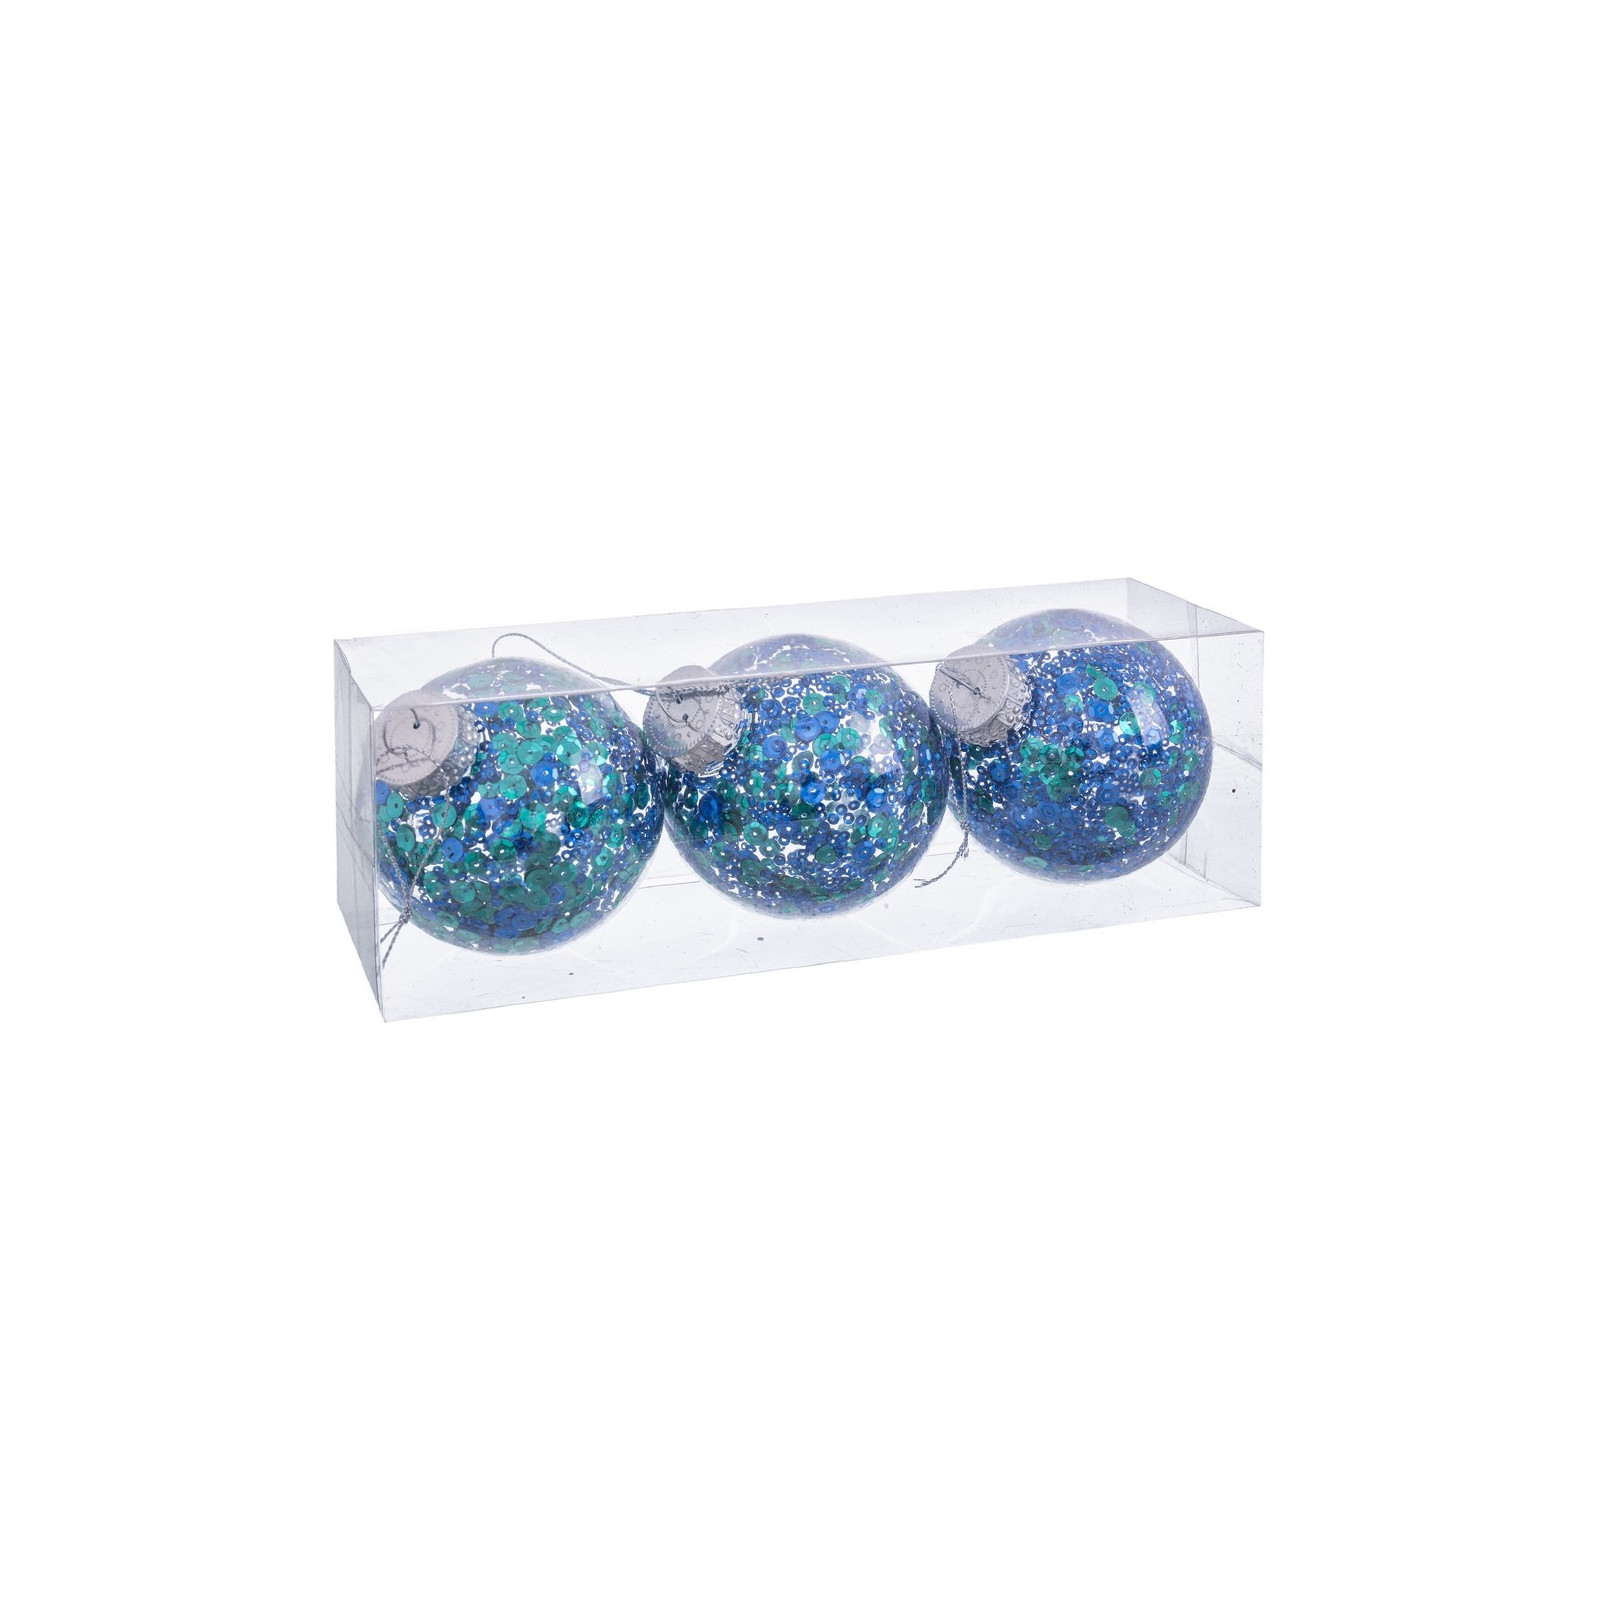 S 3 bolas transparente azul verde 8 x 8 x 8 cm